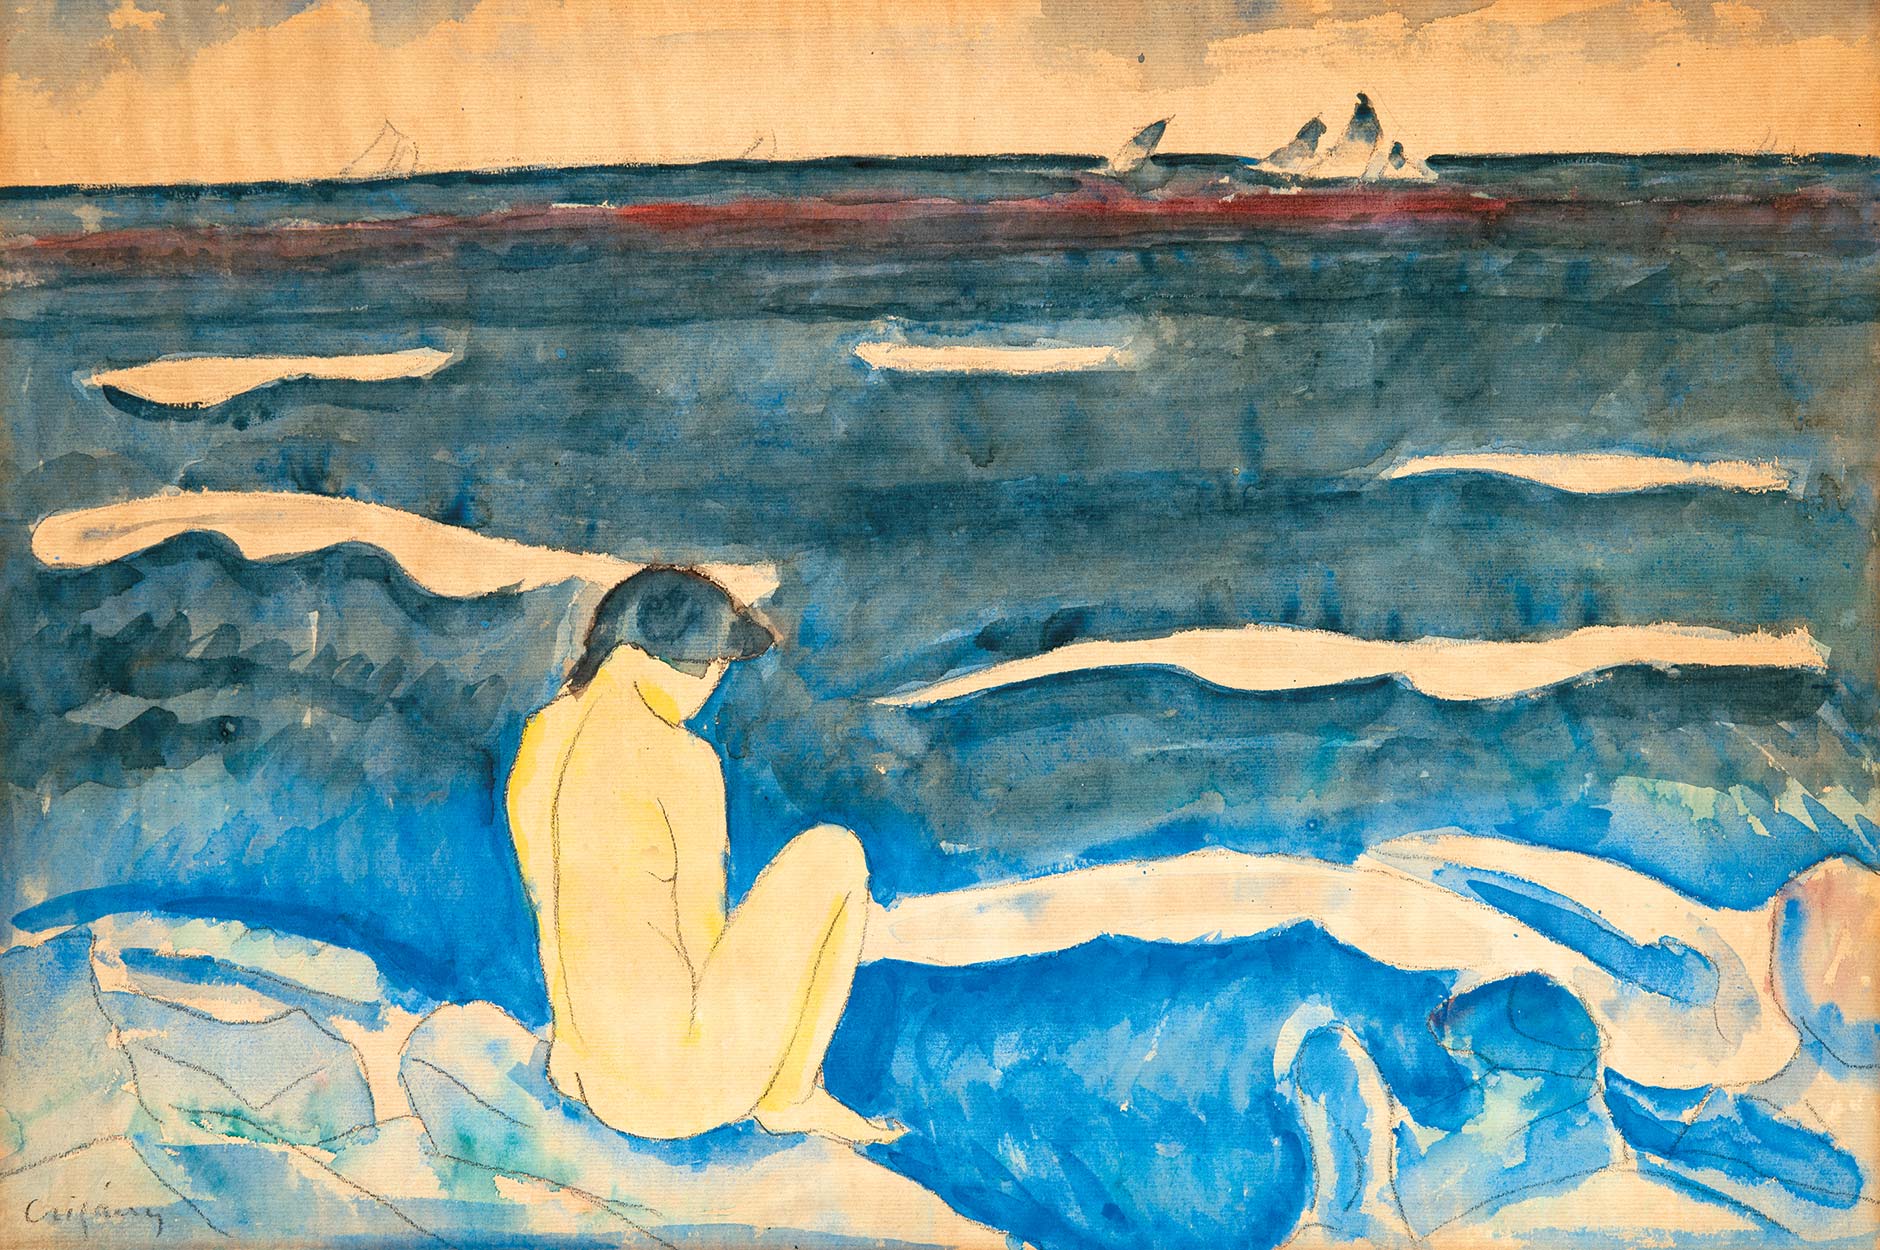 Czigány Dezső (1883-1938) Nude by the Sea, 1930s